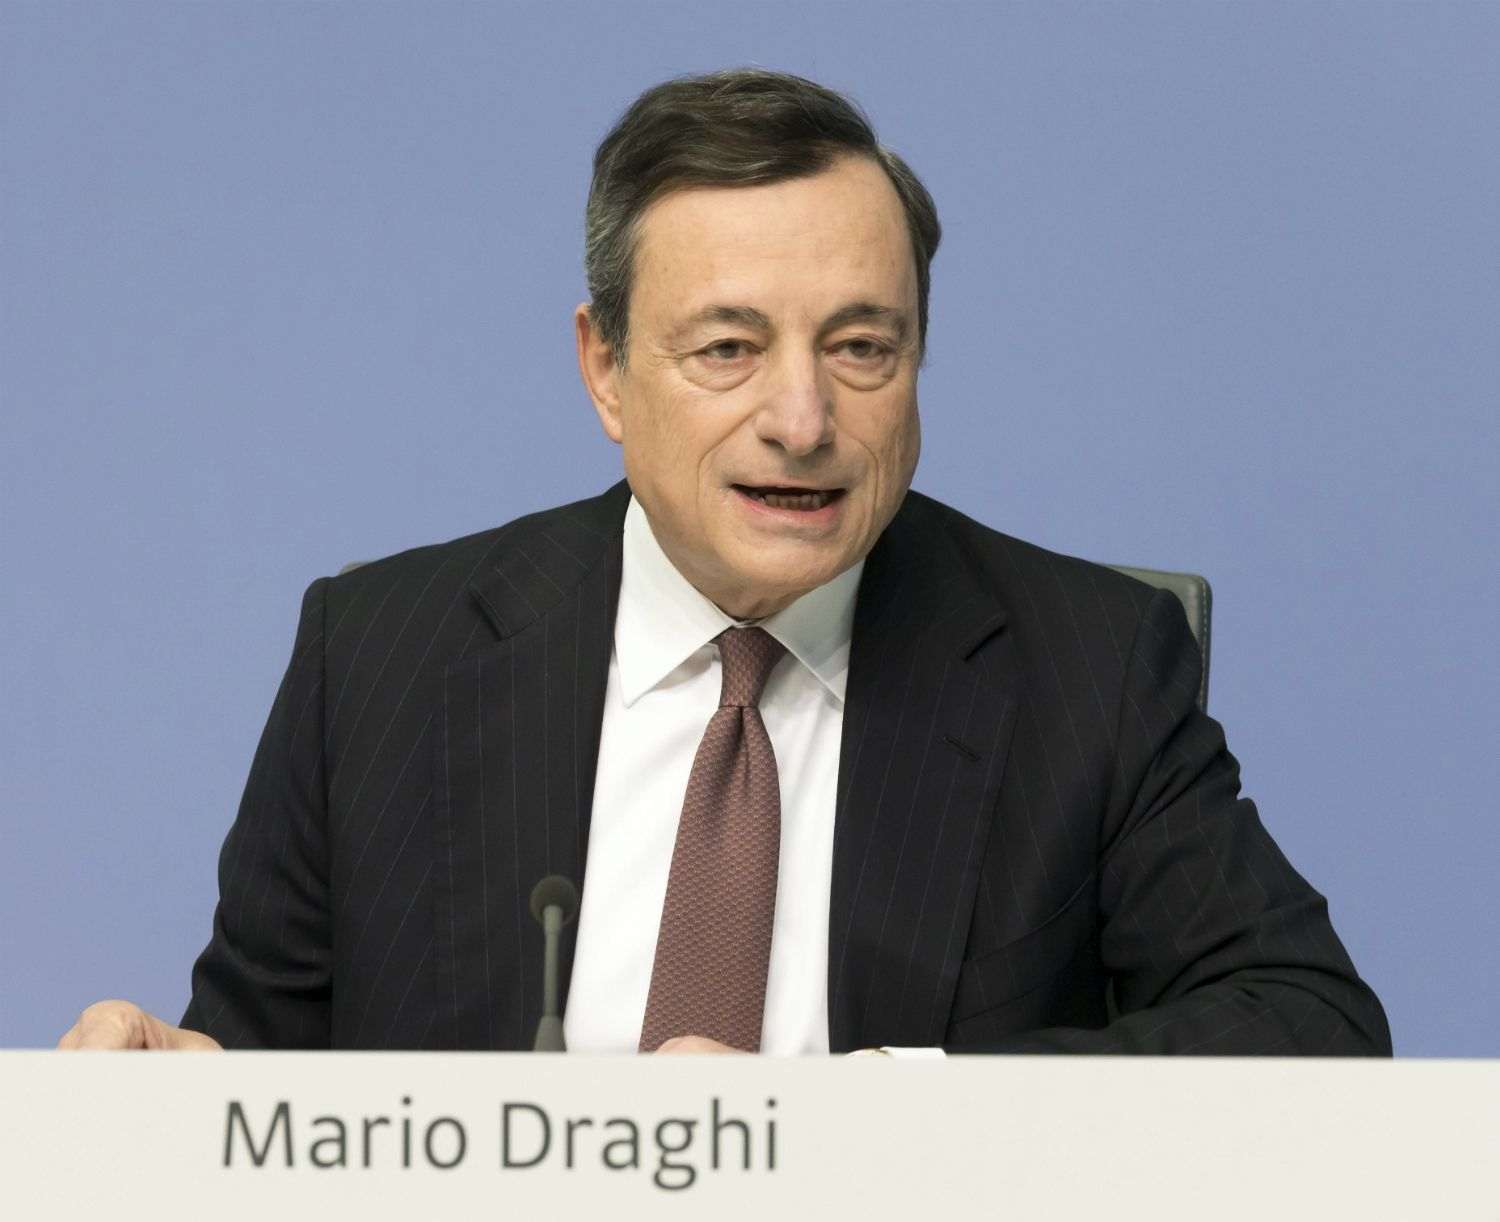 Draghi abaixa els tipus d'interès bancaris i reprèn la compra de deute